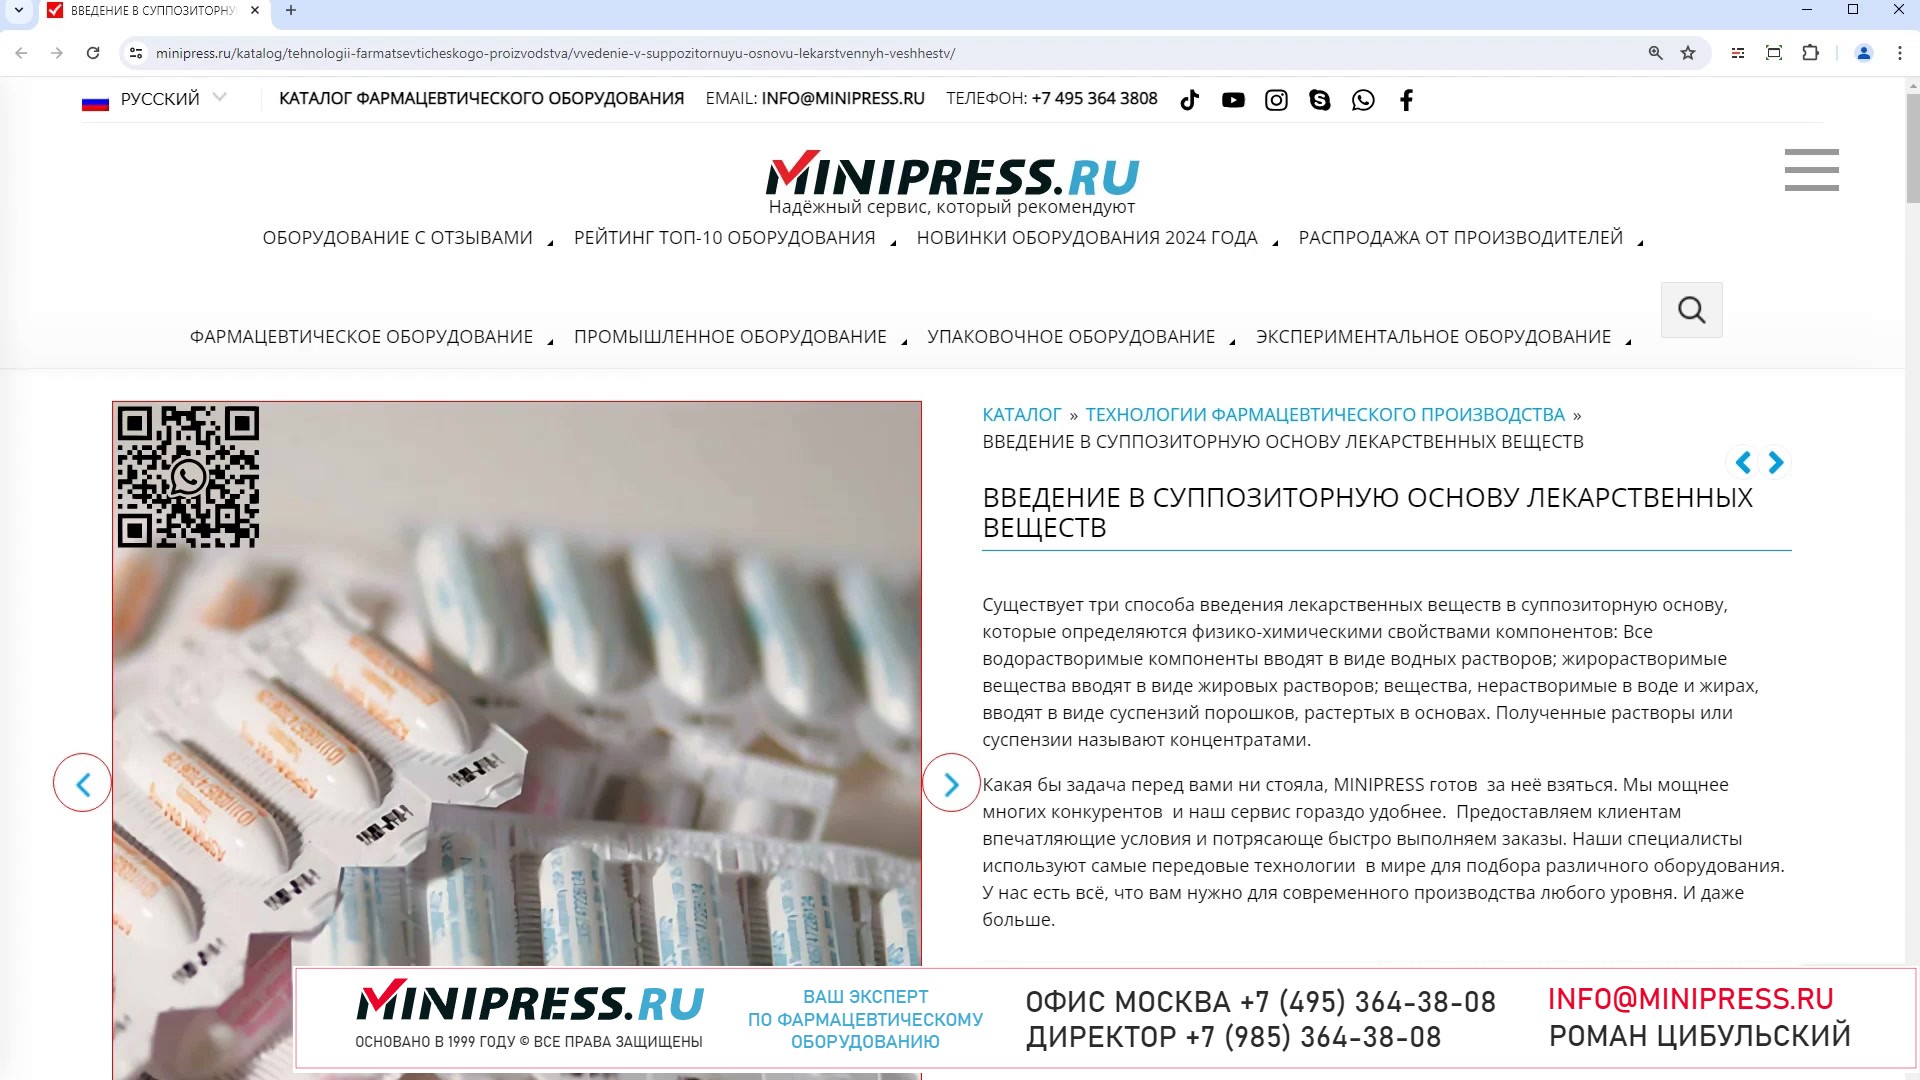 Minipress.ru Введение в суппозиторную основу лекарственных веществ